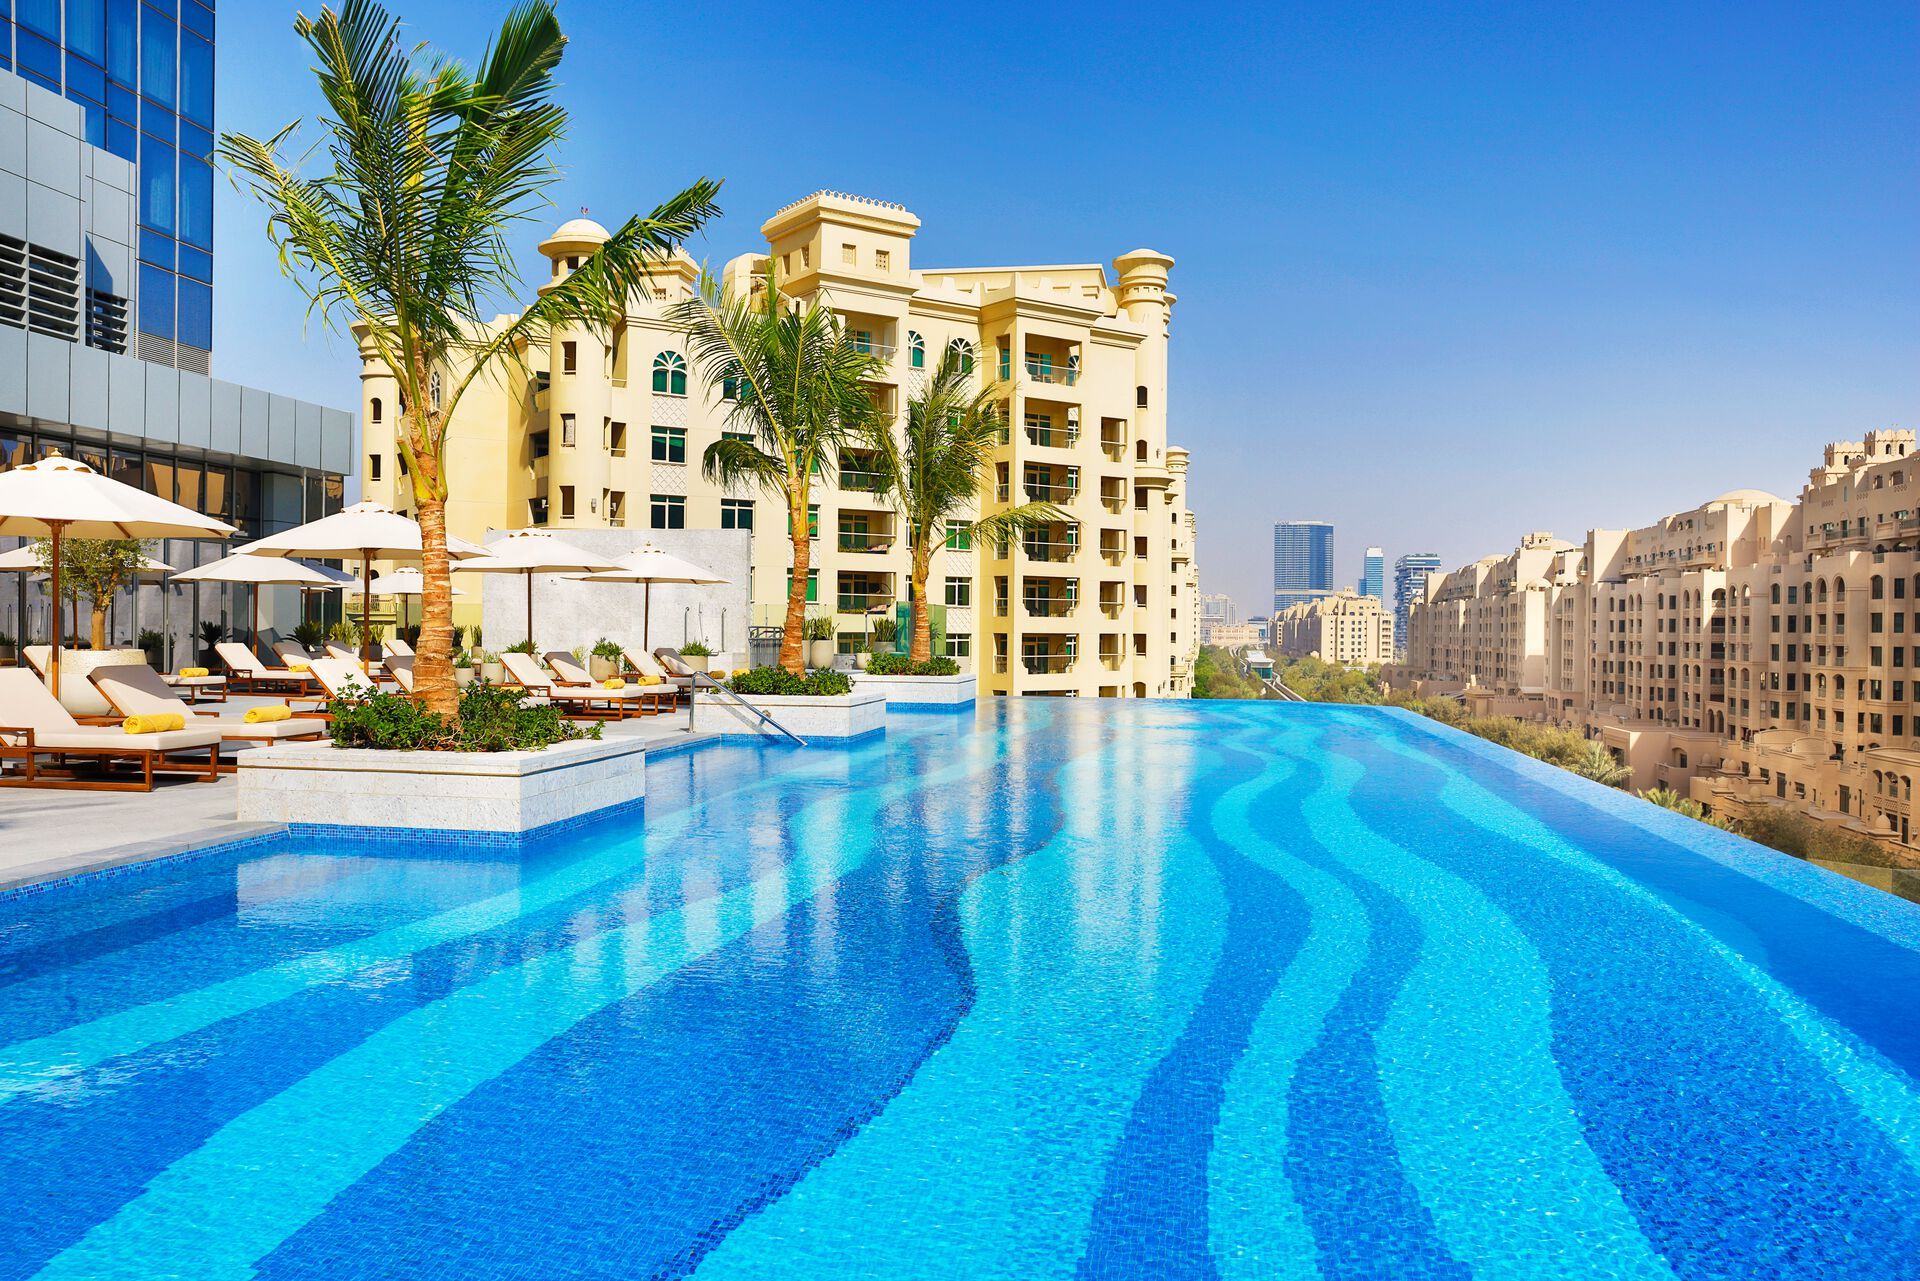 Emirats Arabes Unis - Dubaï - Hotel The St. Regis Dubai, The Palm 5*